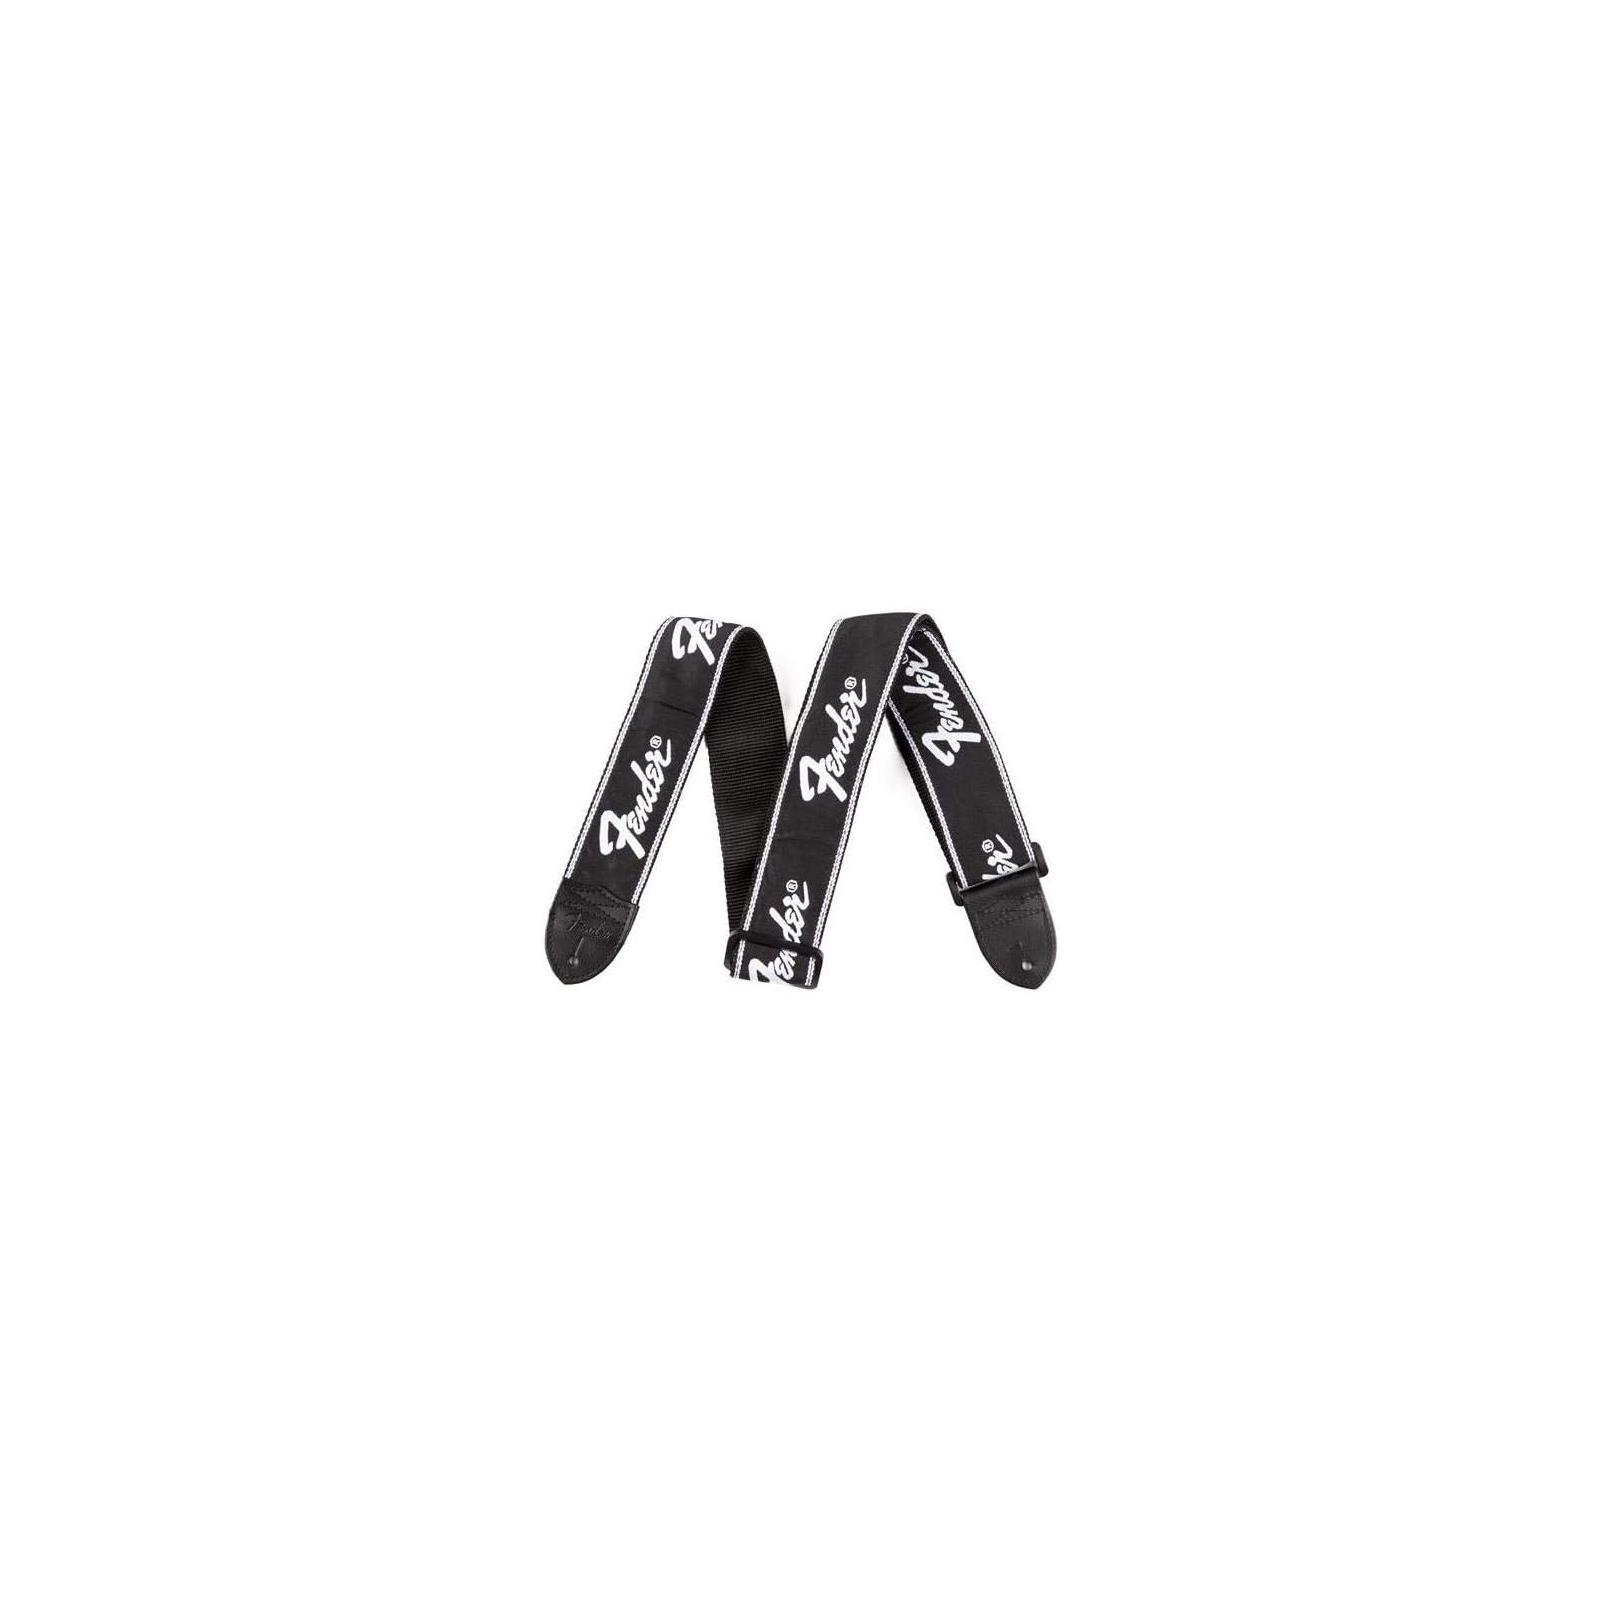 Fender Running Logo Strap, Black/White Logo, 2"